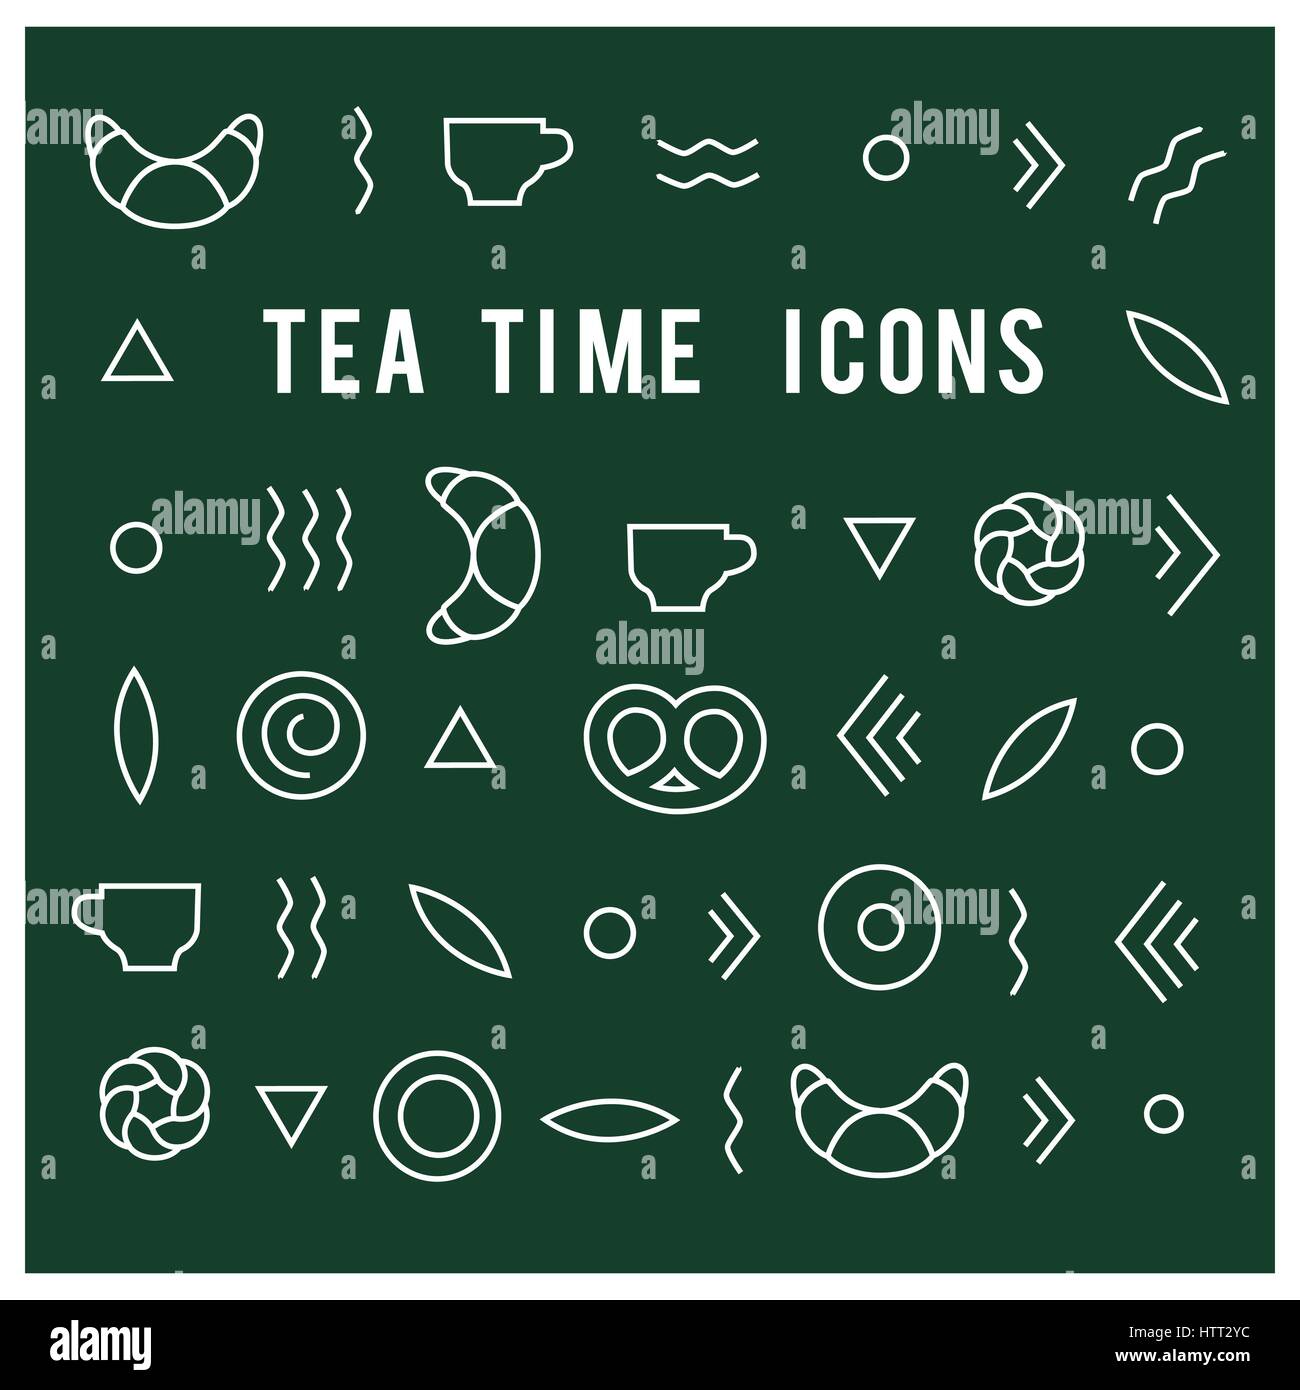 tea time vector icons Stock Vector